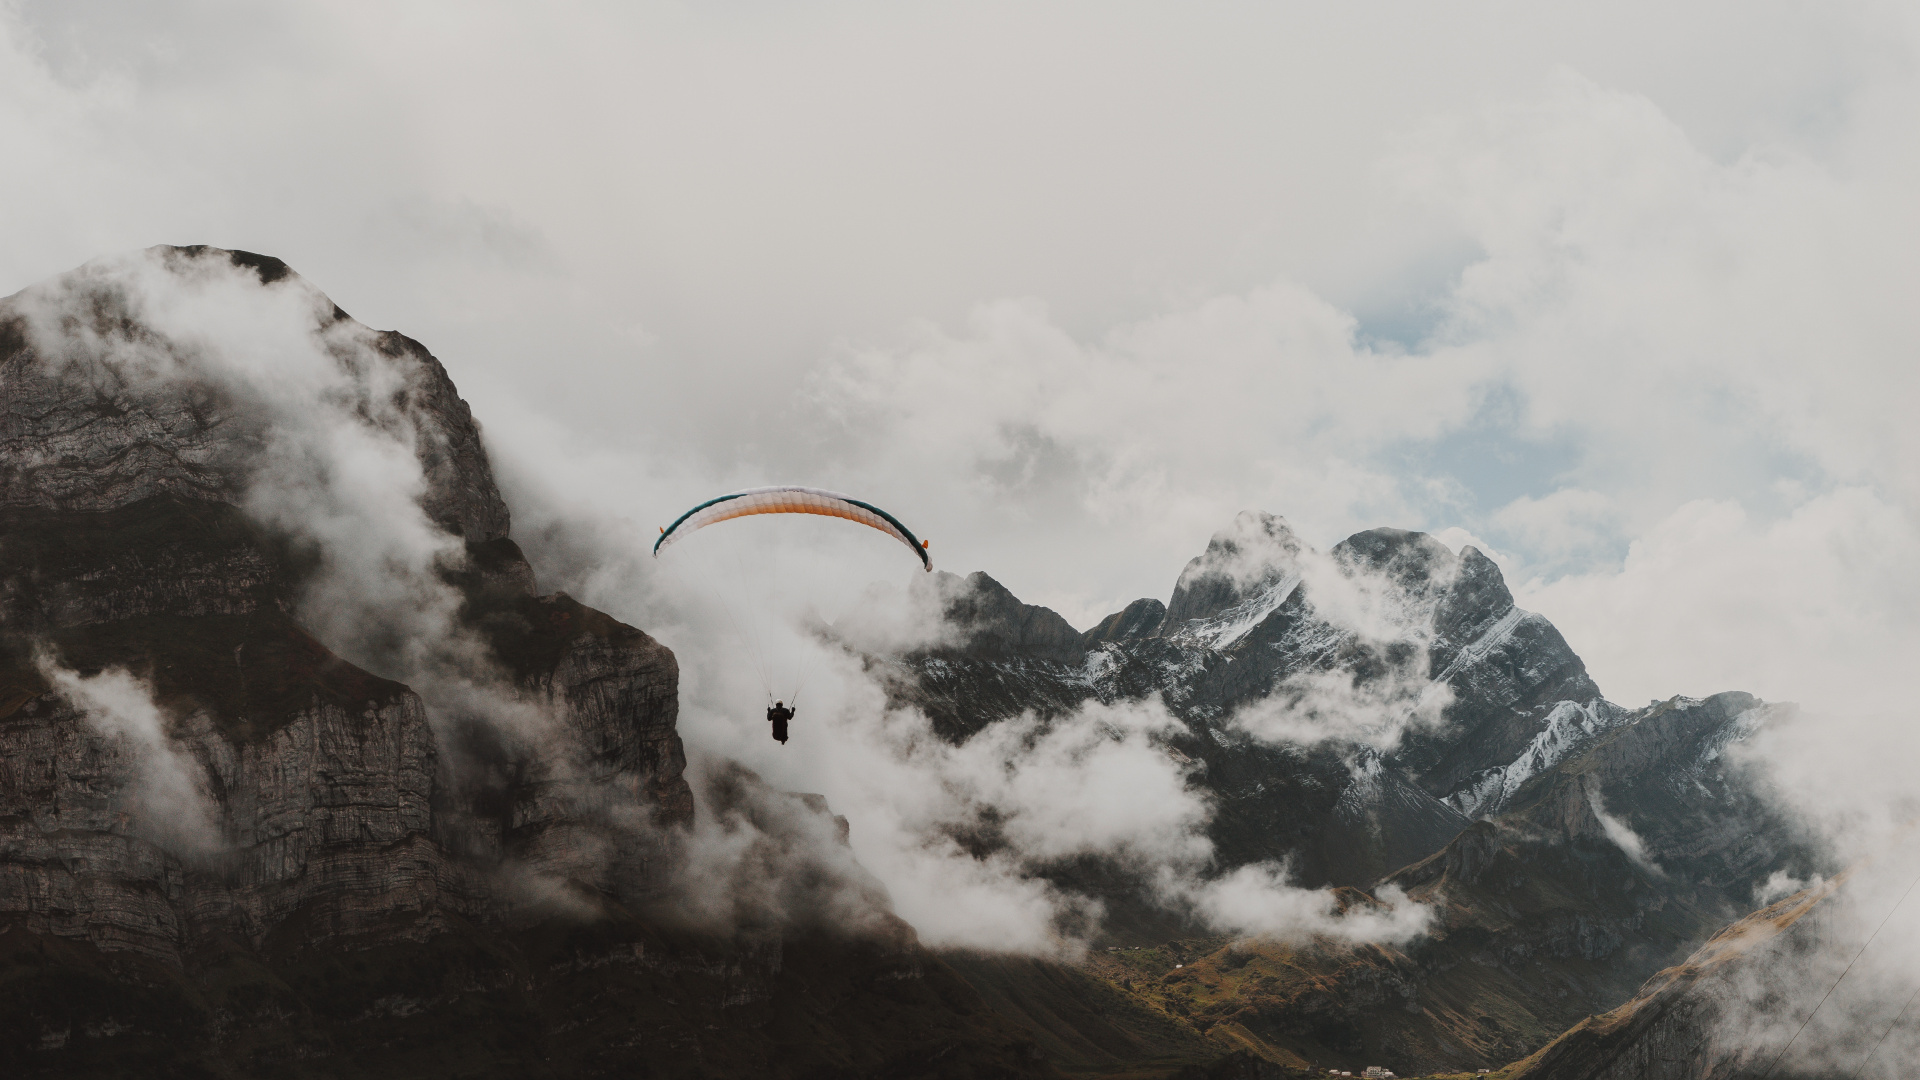 Personne Équitation Parachute Au-dessus de la Montagne Couverte de Neige. Wallpaper in 1920x1080 Resolution